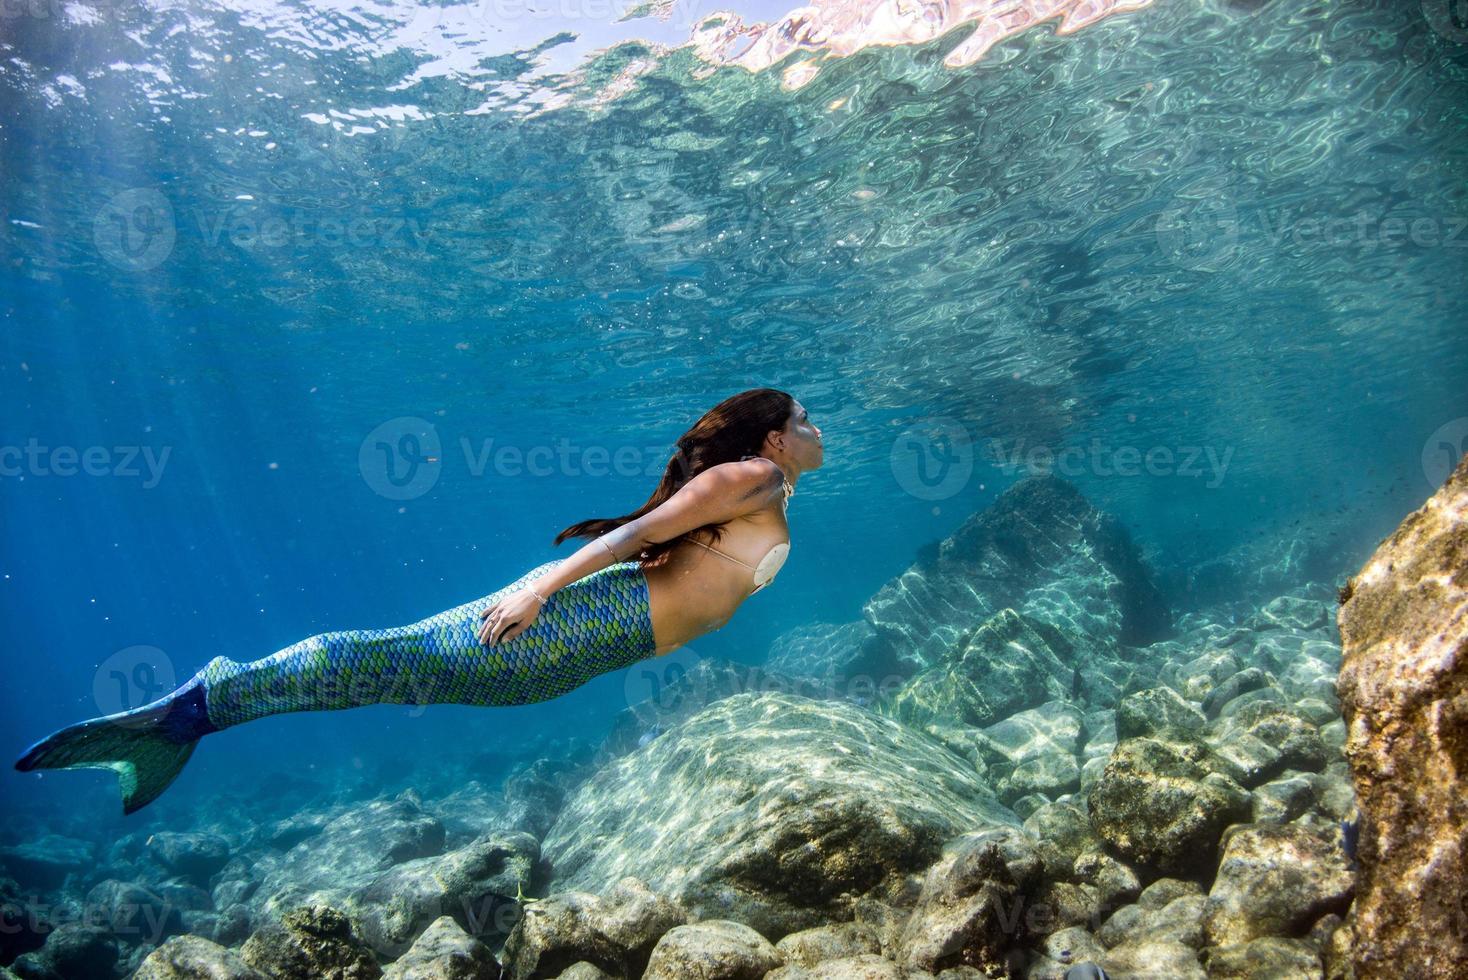 meermin zwemmen onderwater- in de diep blauw zee foto